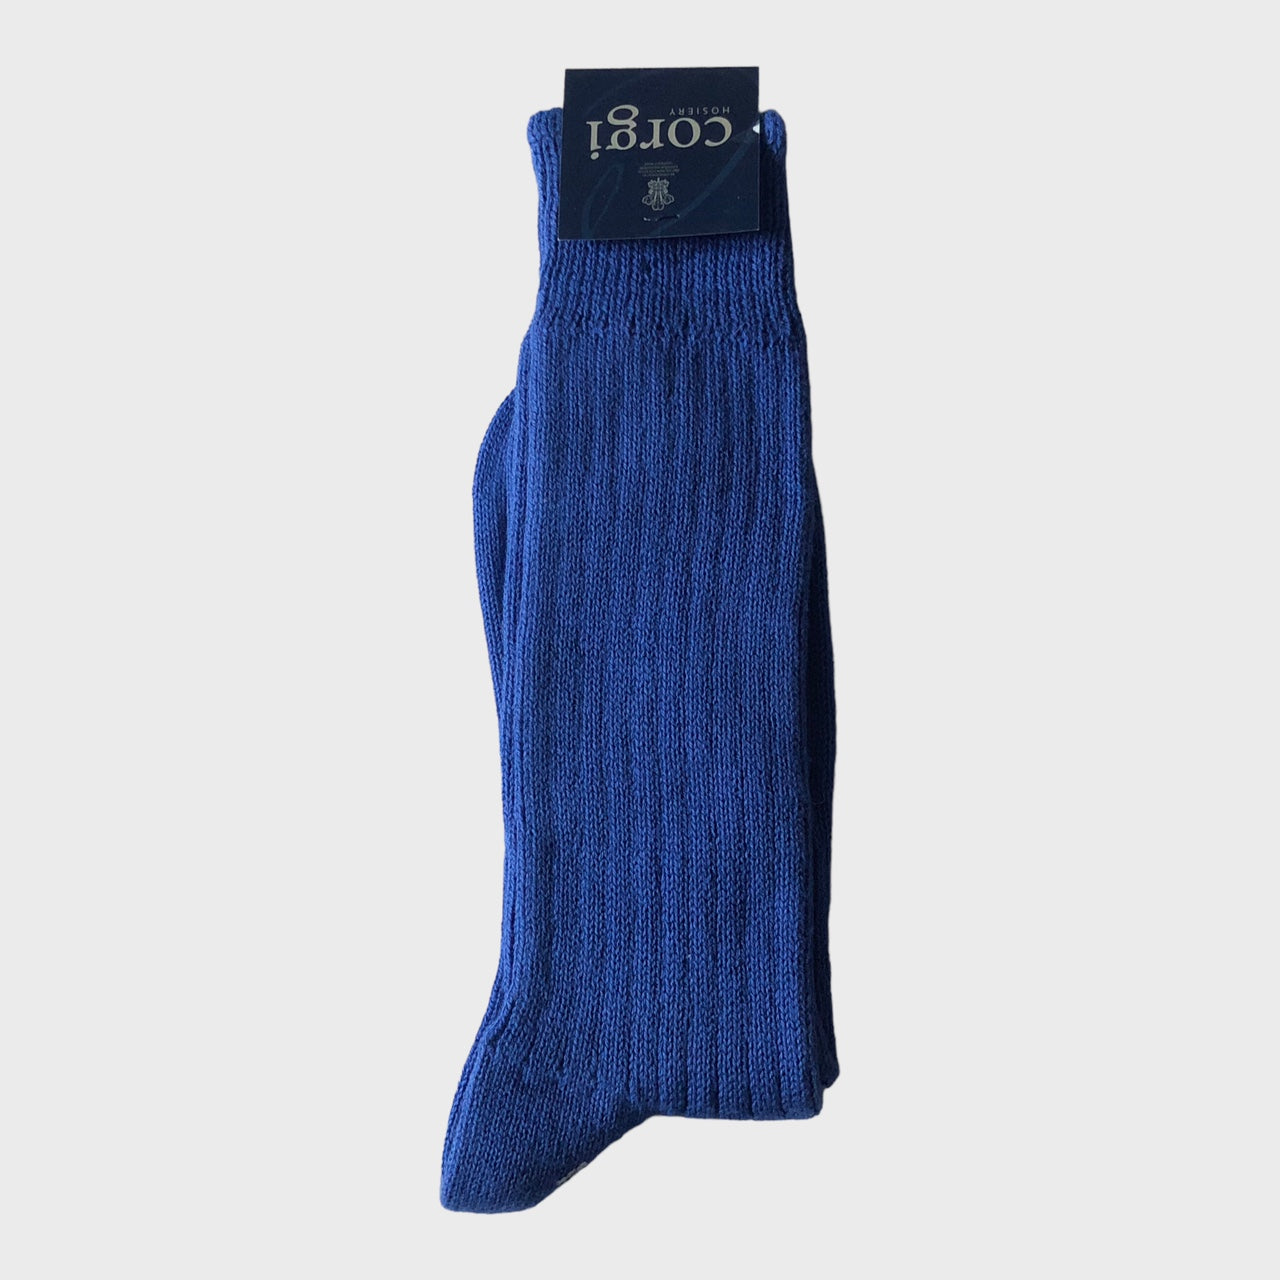 Corgi - Cotton Blue Socks